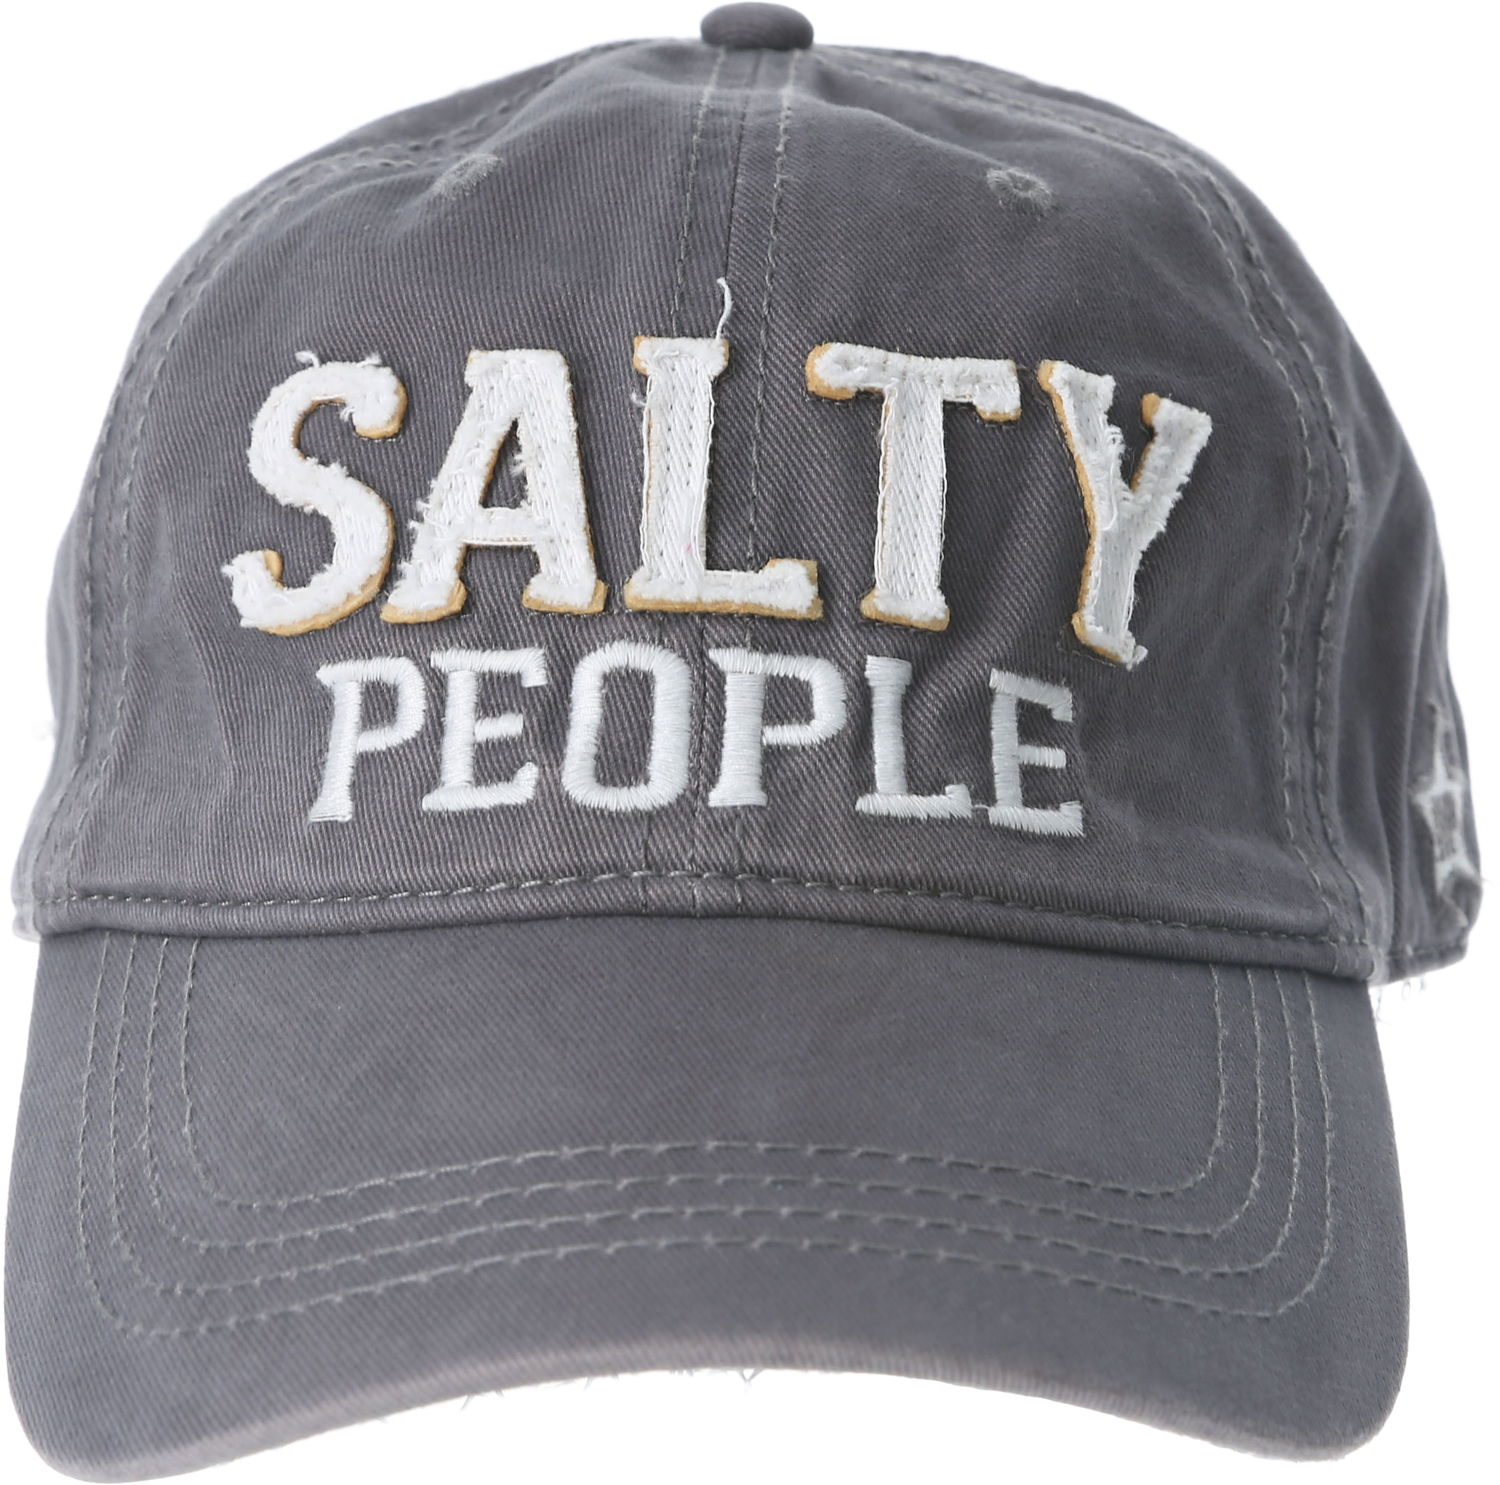 Salty People by We People - Salty People - Dark Gray Adjustable Hat